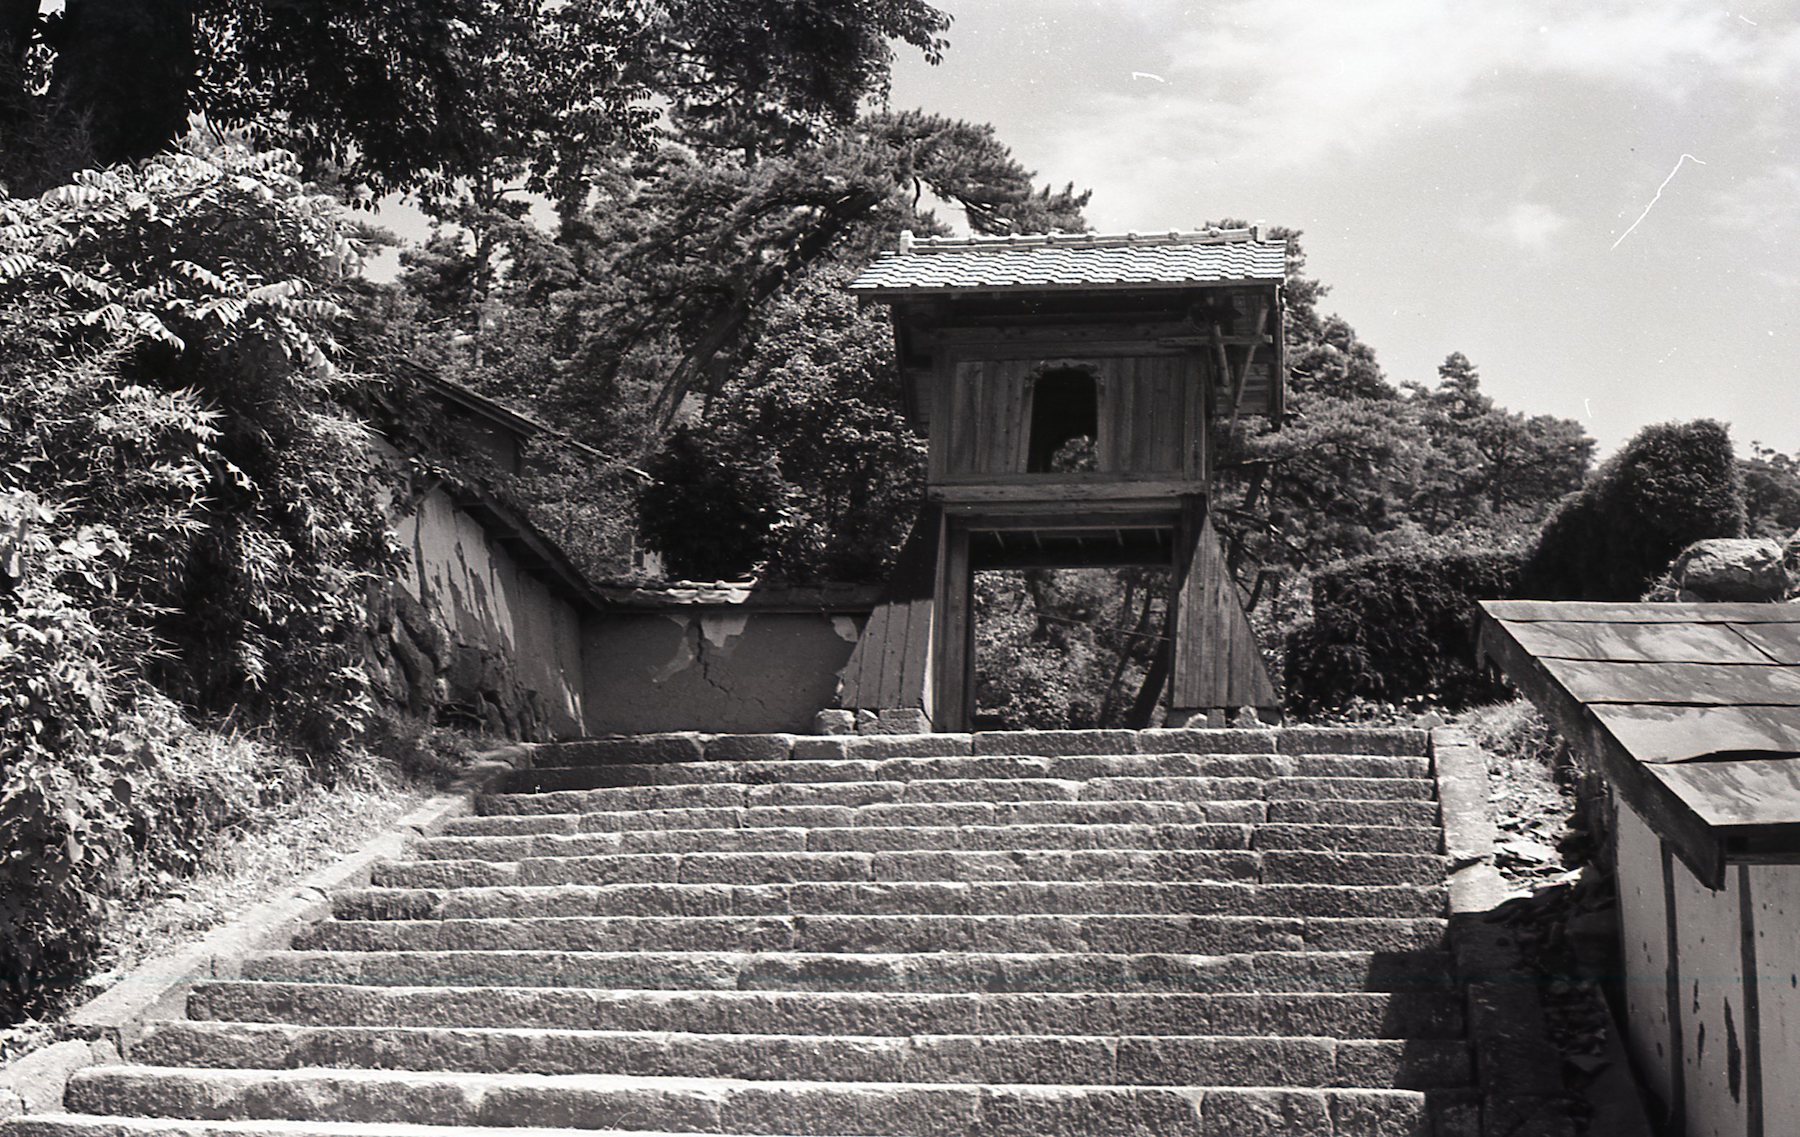 龍峰寺の山門's image 1